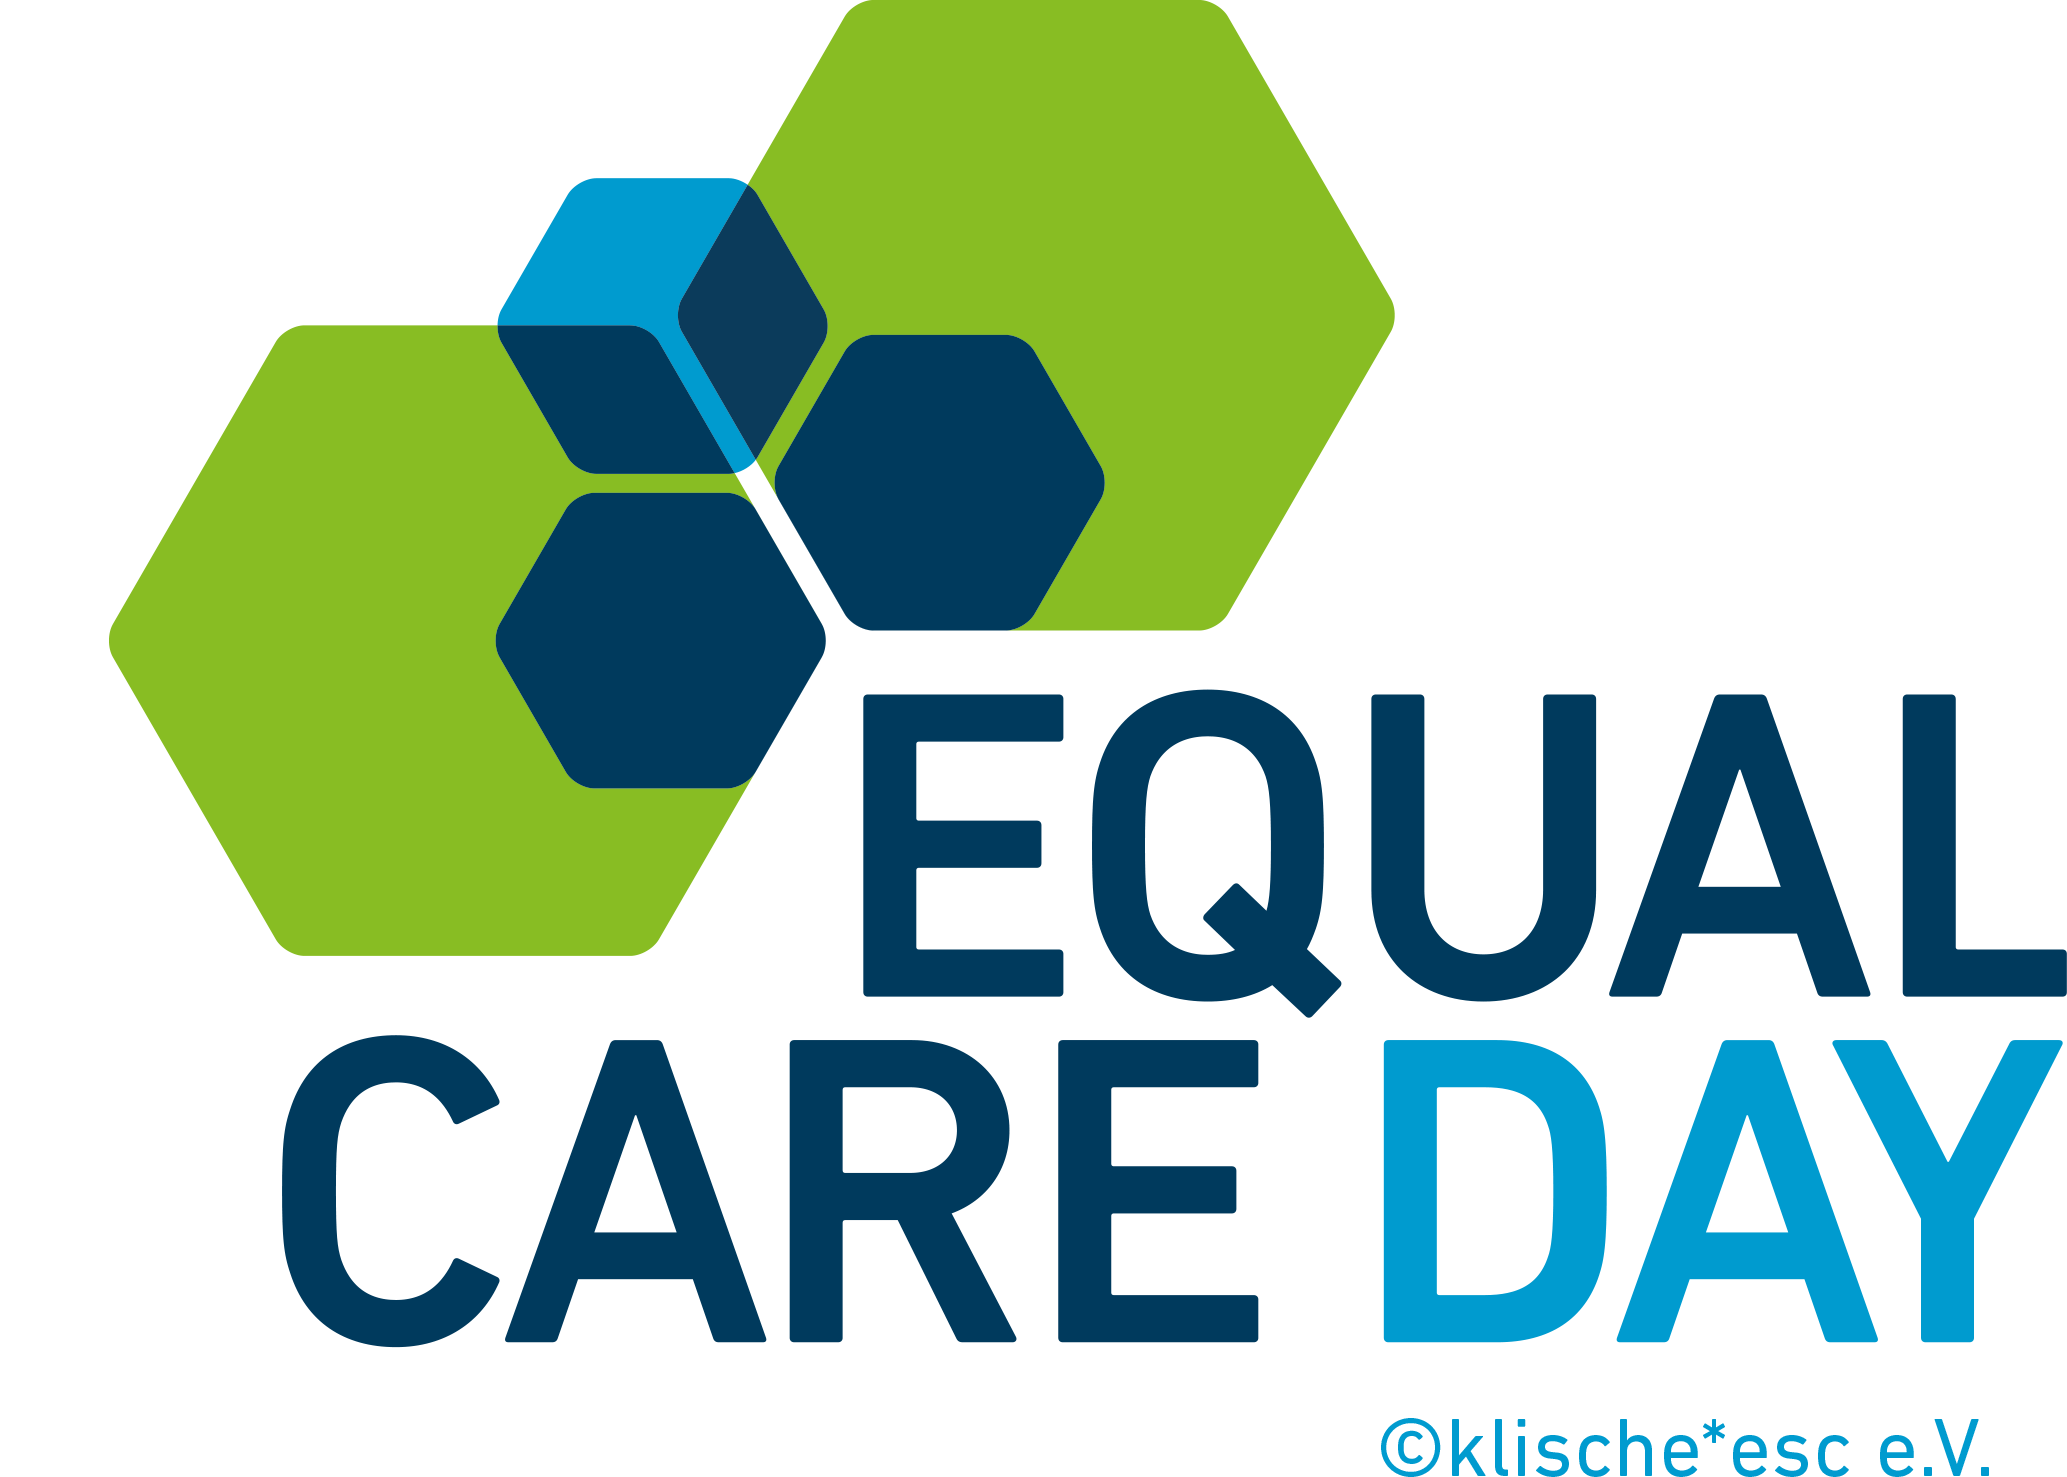 Equal Care Day am 29. Februar 2022